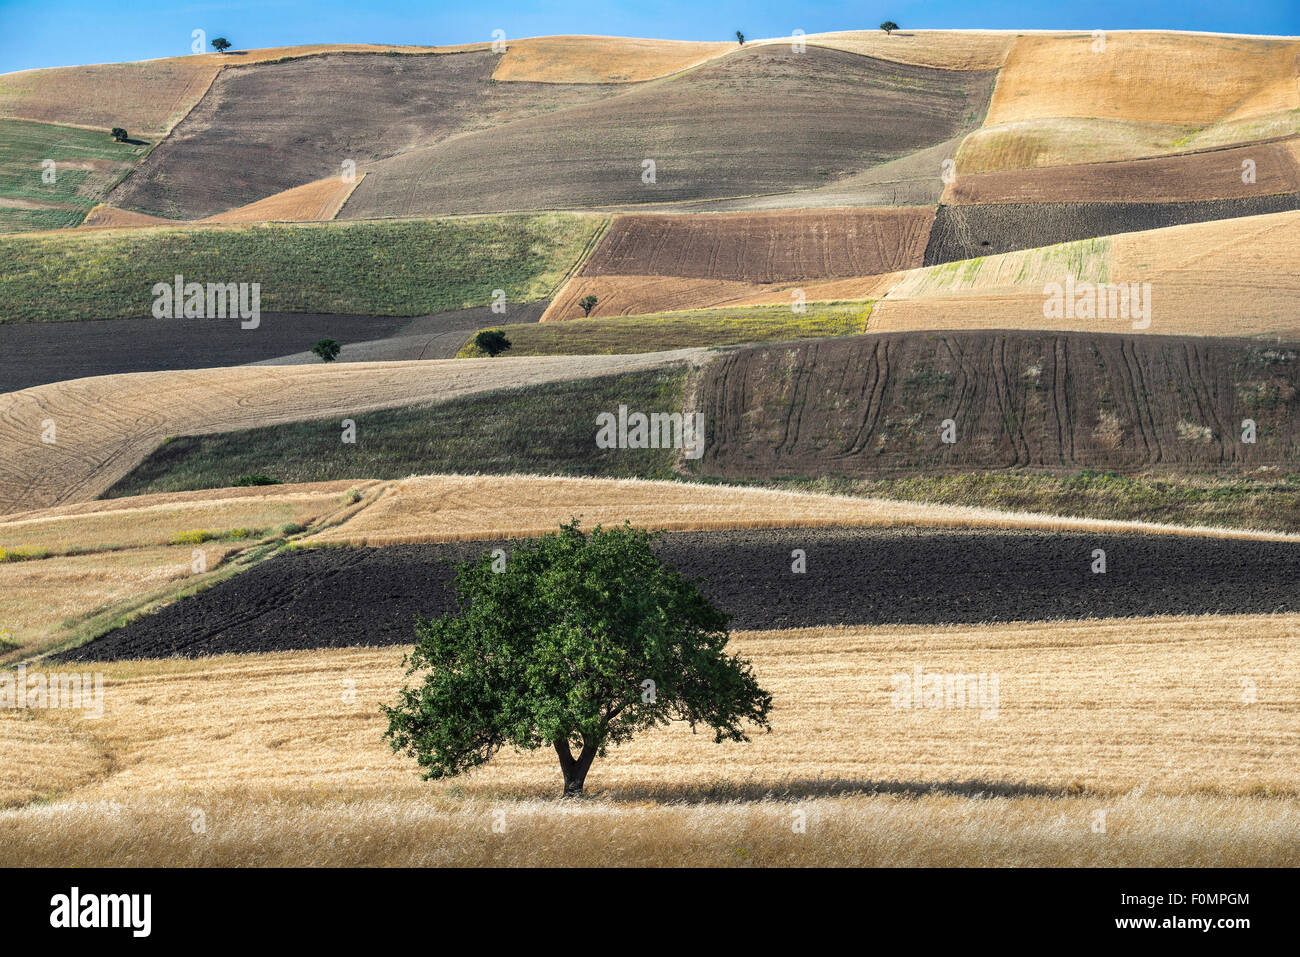 Un motivo a scacchiera di campi nei pressi di Grassano, provincia di Matera, Basilicata, Italia meridionale. Foto Stock